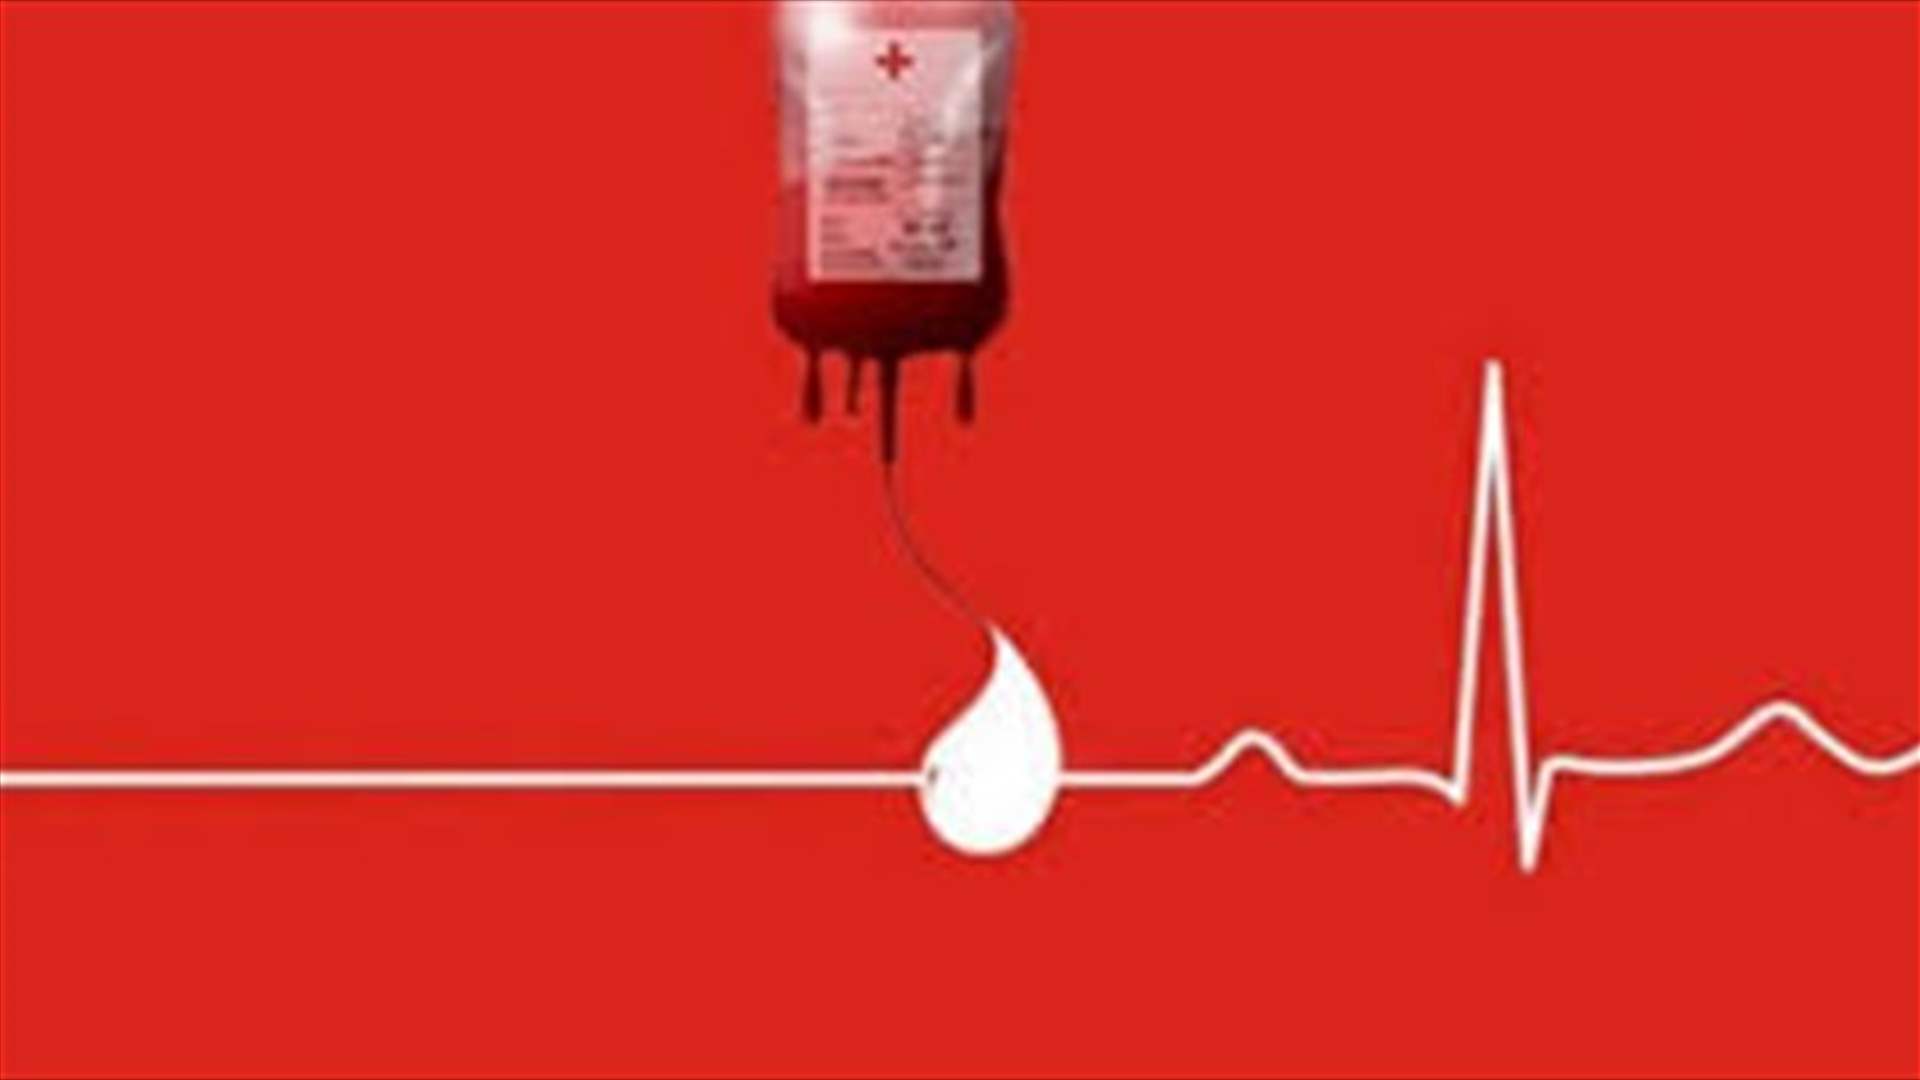 مريض بحاجة ماسّة لوحدات دم من فئة O+ في مستشفى سيدة لبنان - جونيه للتبرع الرجاء الاتصال على الرقم: 81482800